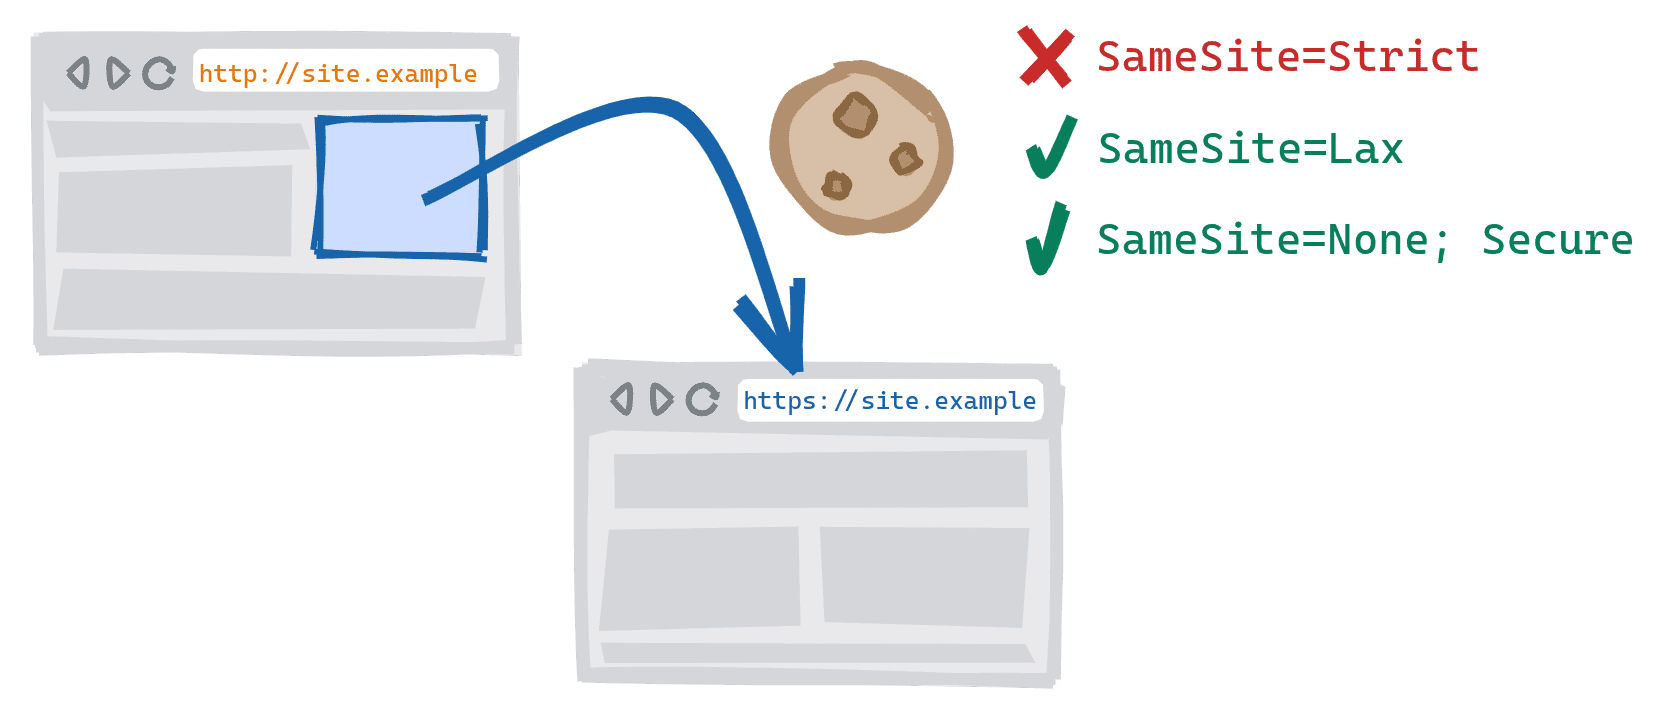 Thao tác điều hướng trên nhiều giao thức được kích hoạt bằng cách đi theo một đường liên kết trên phiên bản HTTP không an toàn của trang web đến phiên bản HTTPS bảo mật. Đã chặn cookie SameSite=Strict, SameSite=Lax và SameSite=None; Cho phép cookie bảo mật.